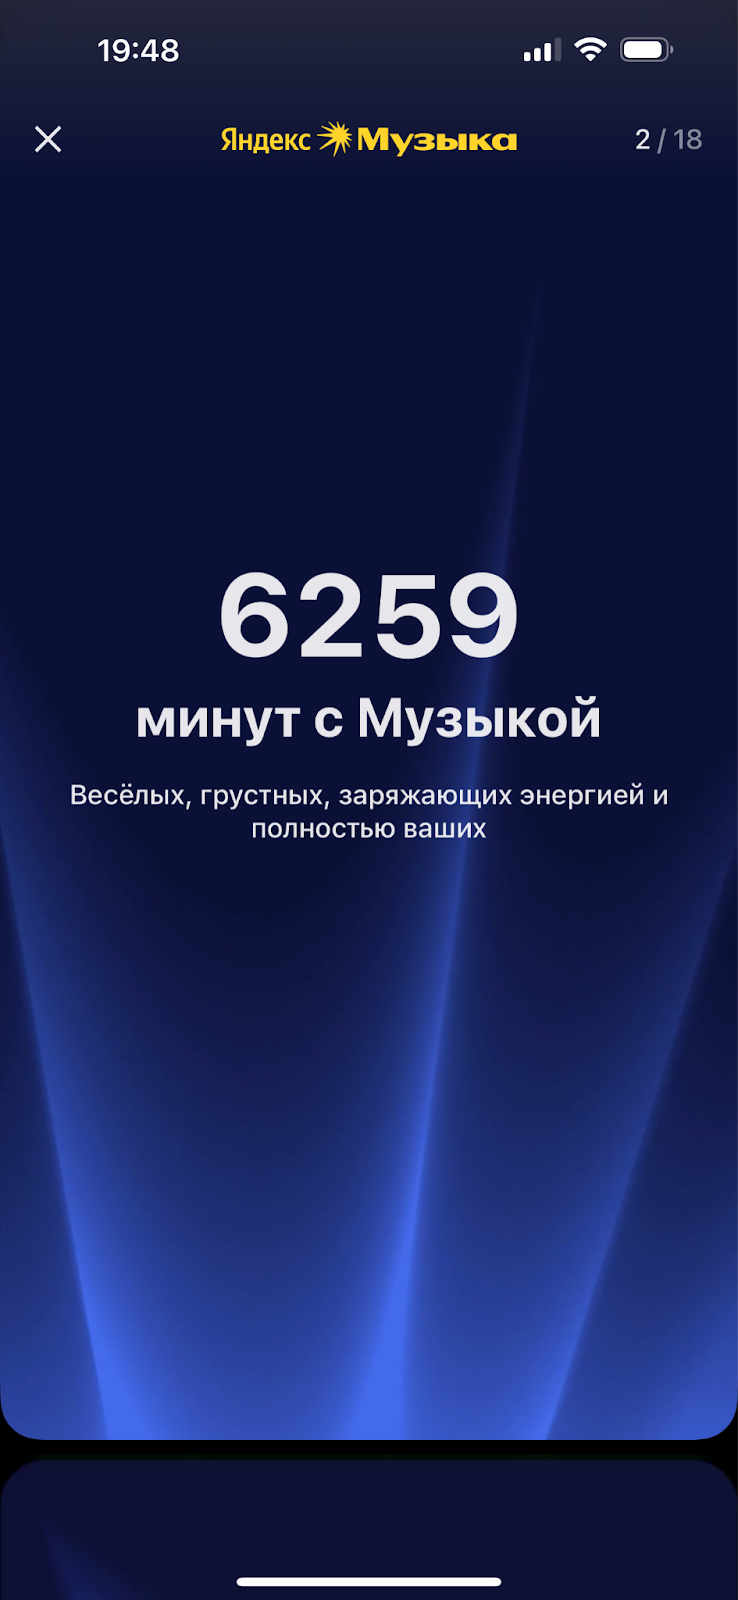 Пример с итогами года в Яндекс Музыке